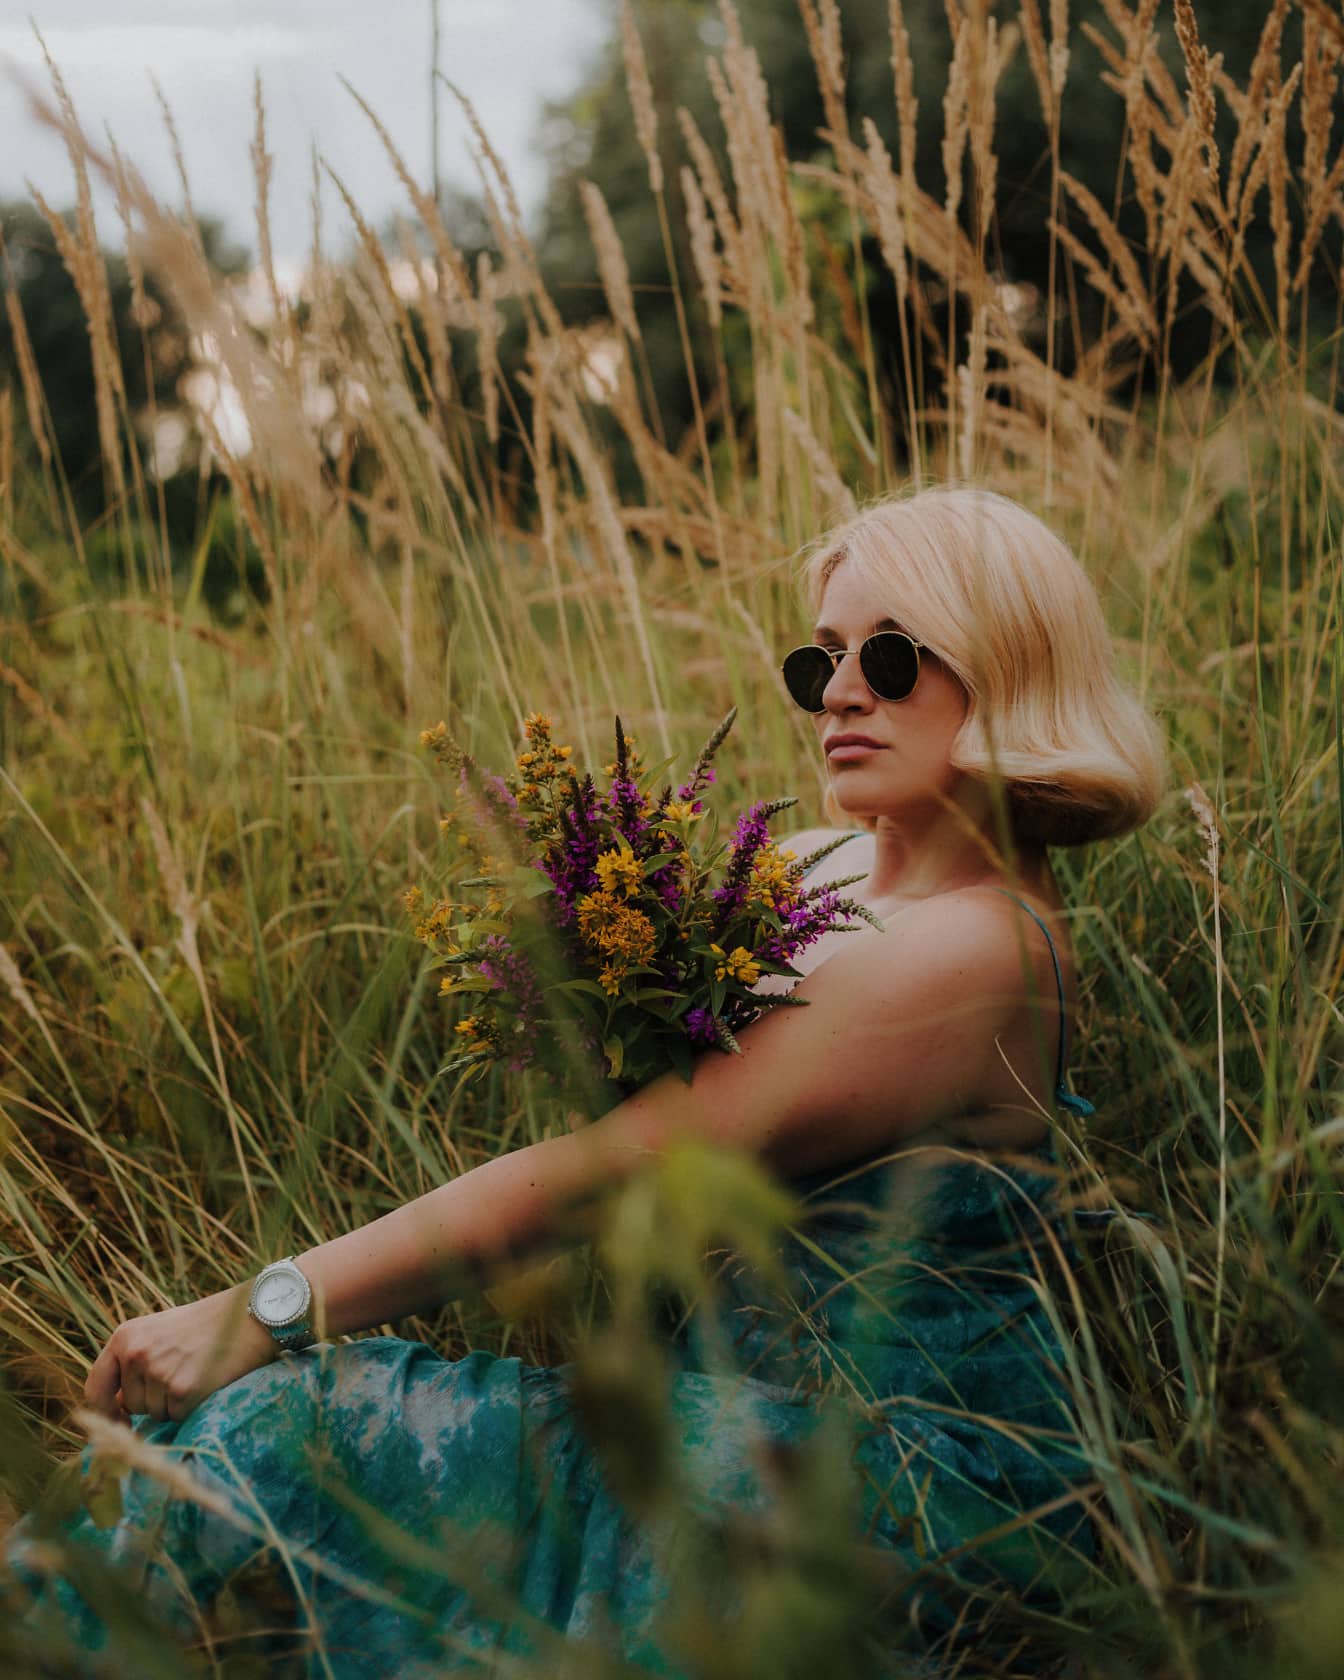 Glamurozna plavokosa mlada žena foto model pozira u travnatim biljkama s buketom divljeg cvijeća